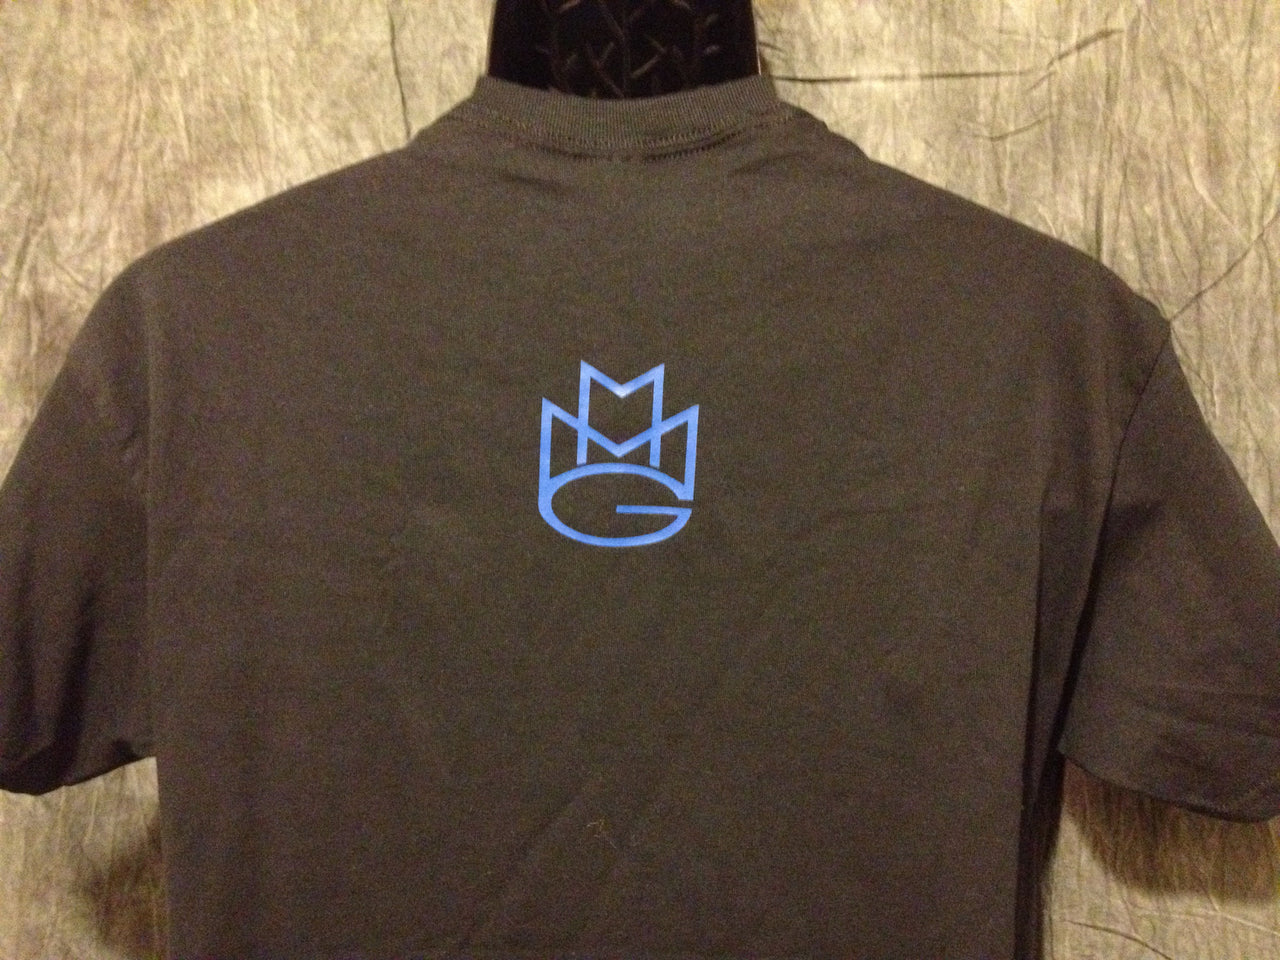 Maybach Music Group Tshirt: Black with Blue Print - TshirtNow.net - 3